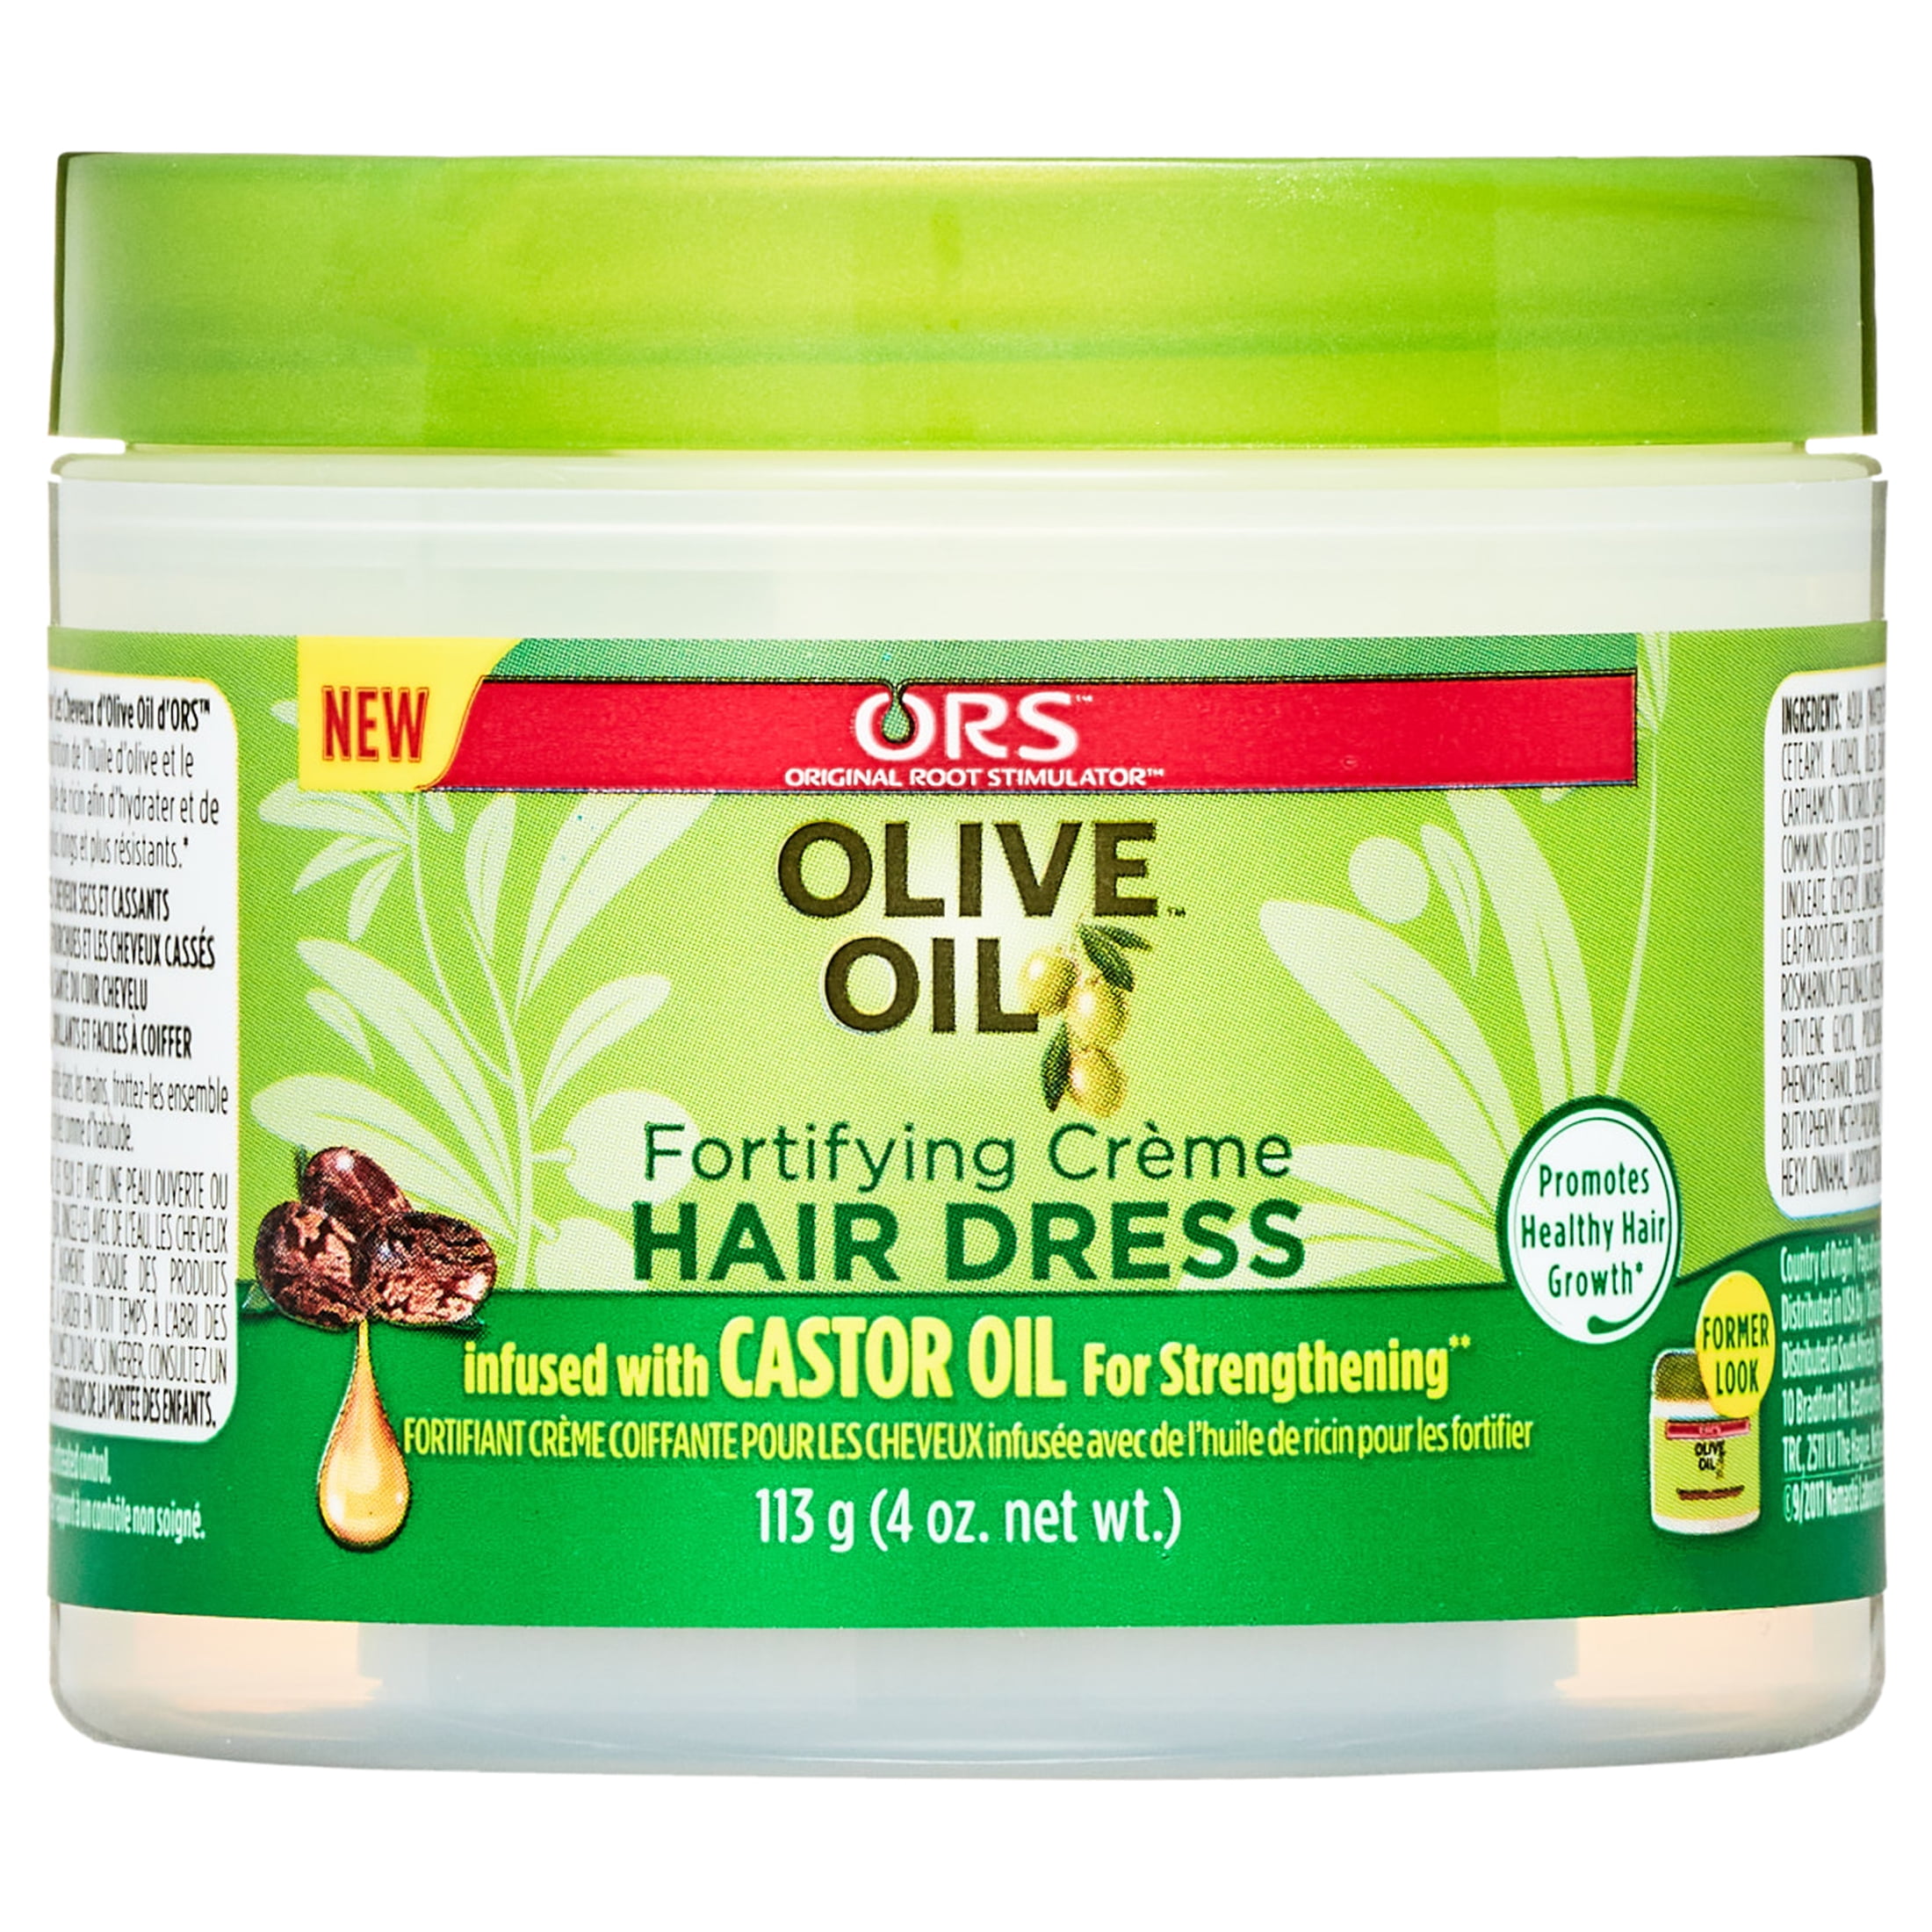 Crème fortifiante HAIR DRESS OLIVE OIL 227g - Kaz à Beauté